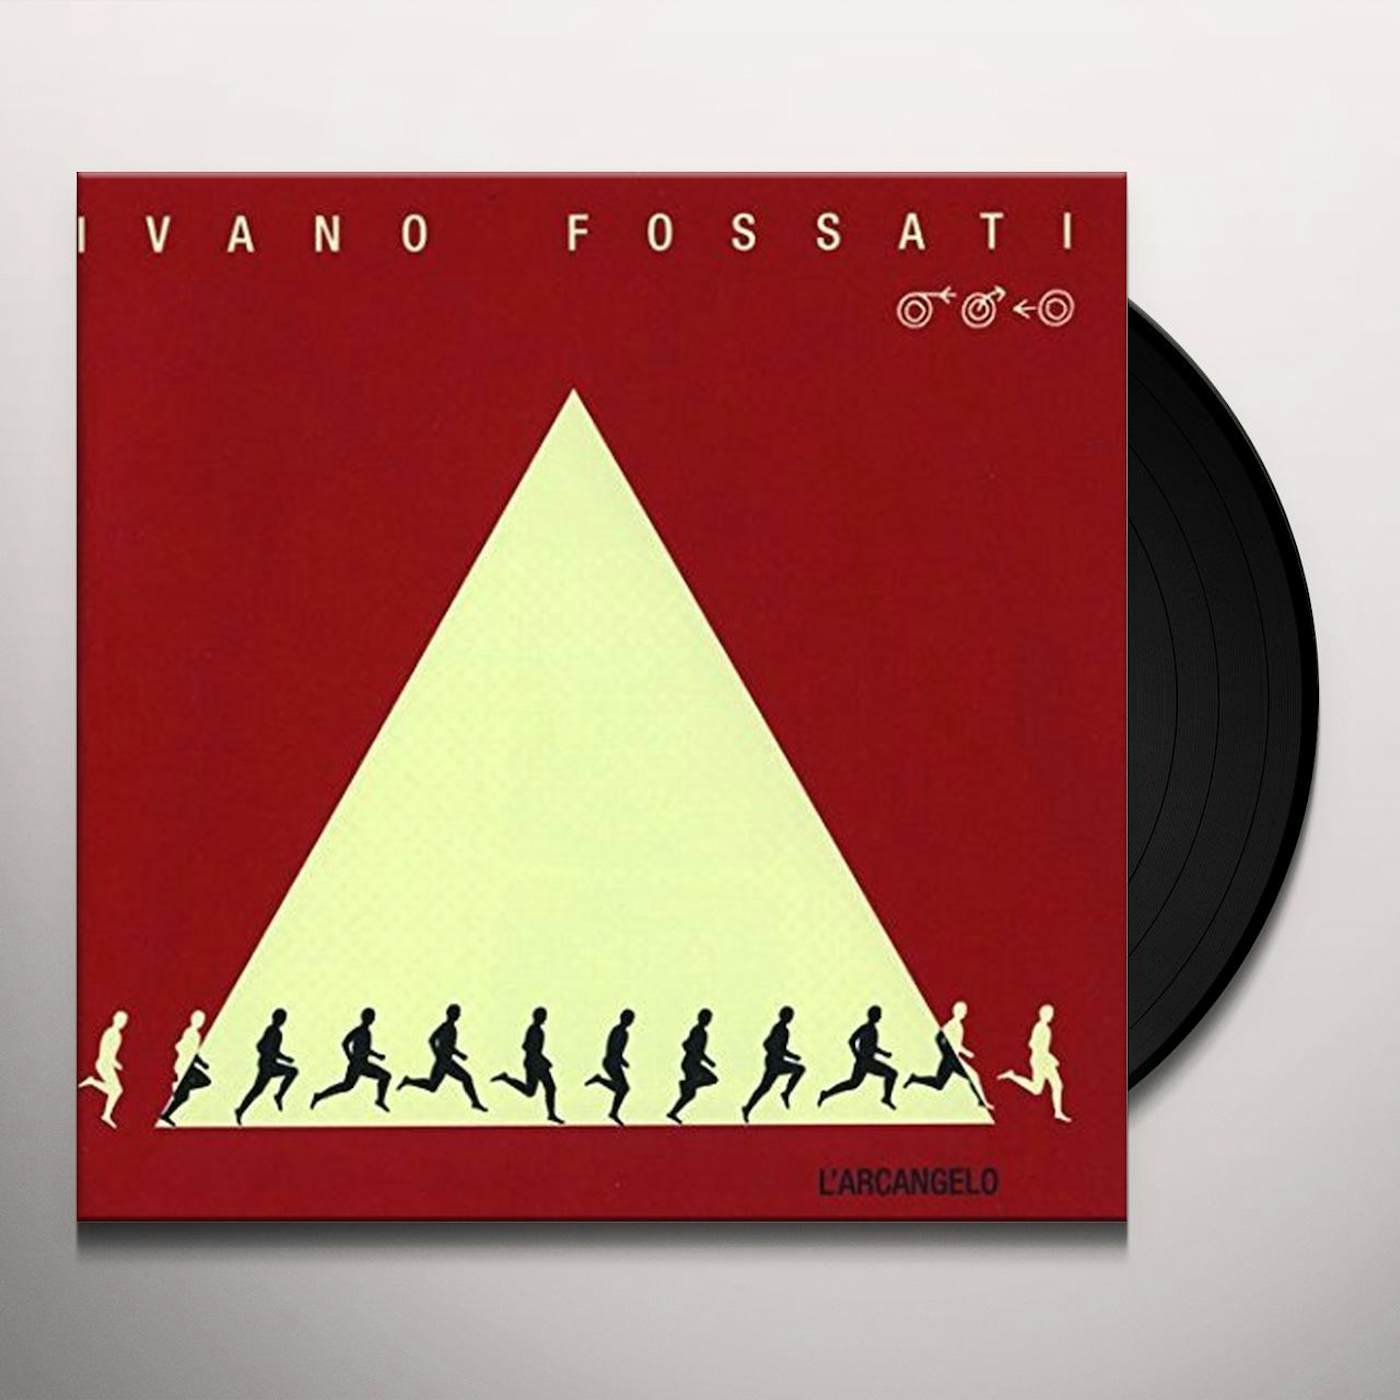 Ivano Fossati L'Arcangelo Vinyl Record